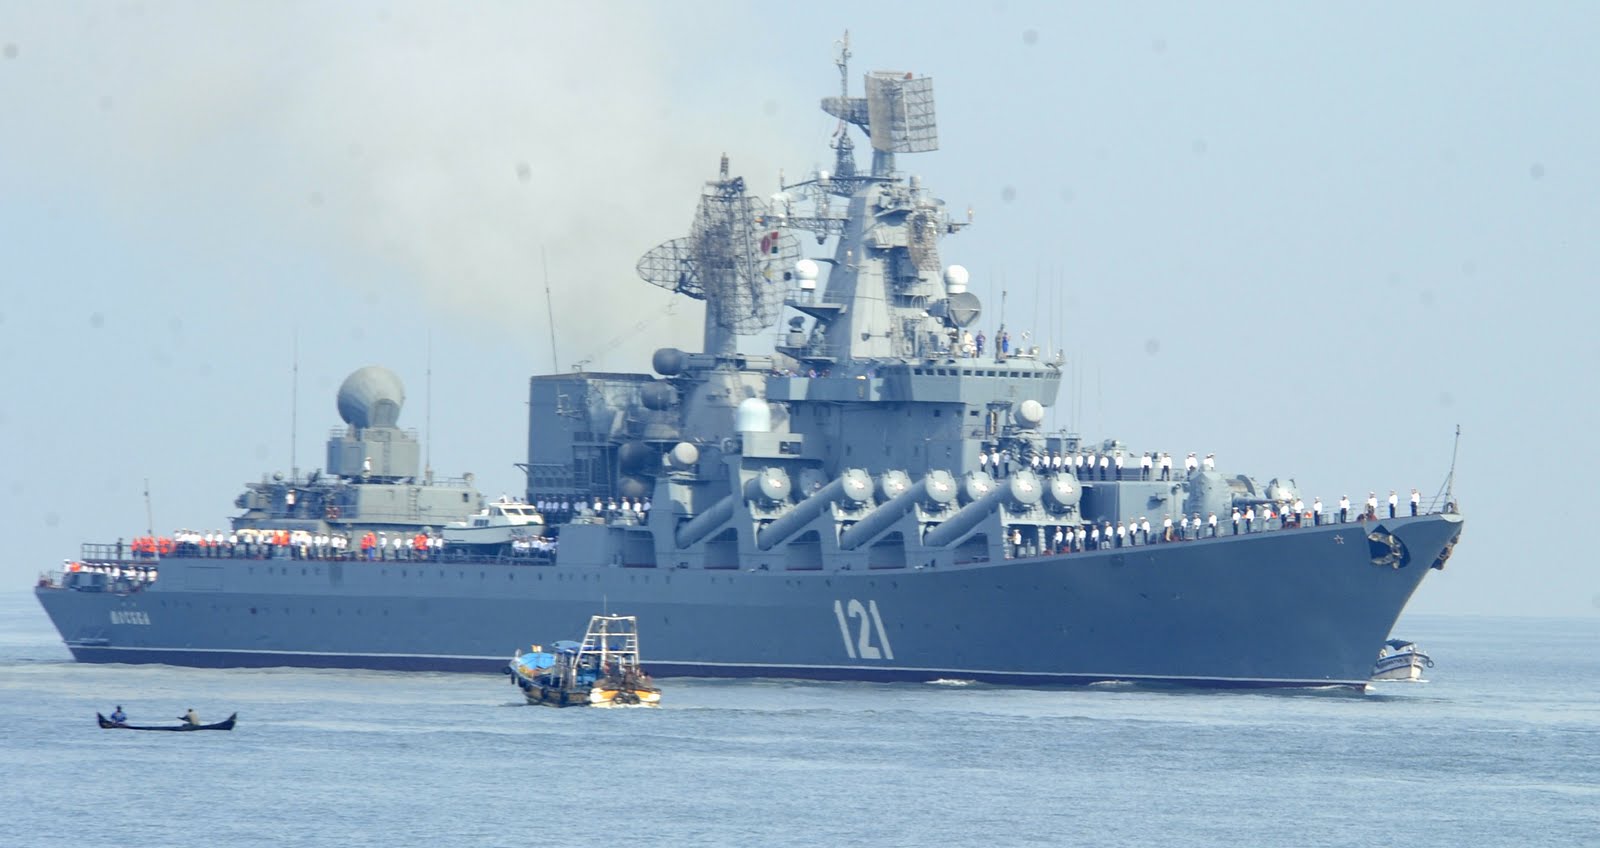 Tuần dương hạm Moskva thuộc lớp tàu chiến Slava, đóng từ cuối những năm 1970